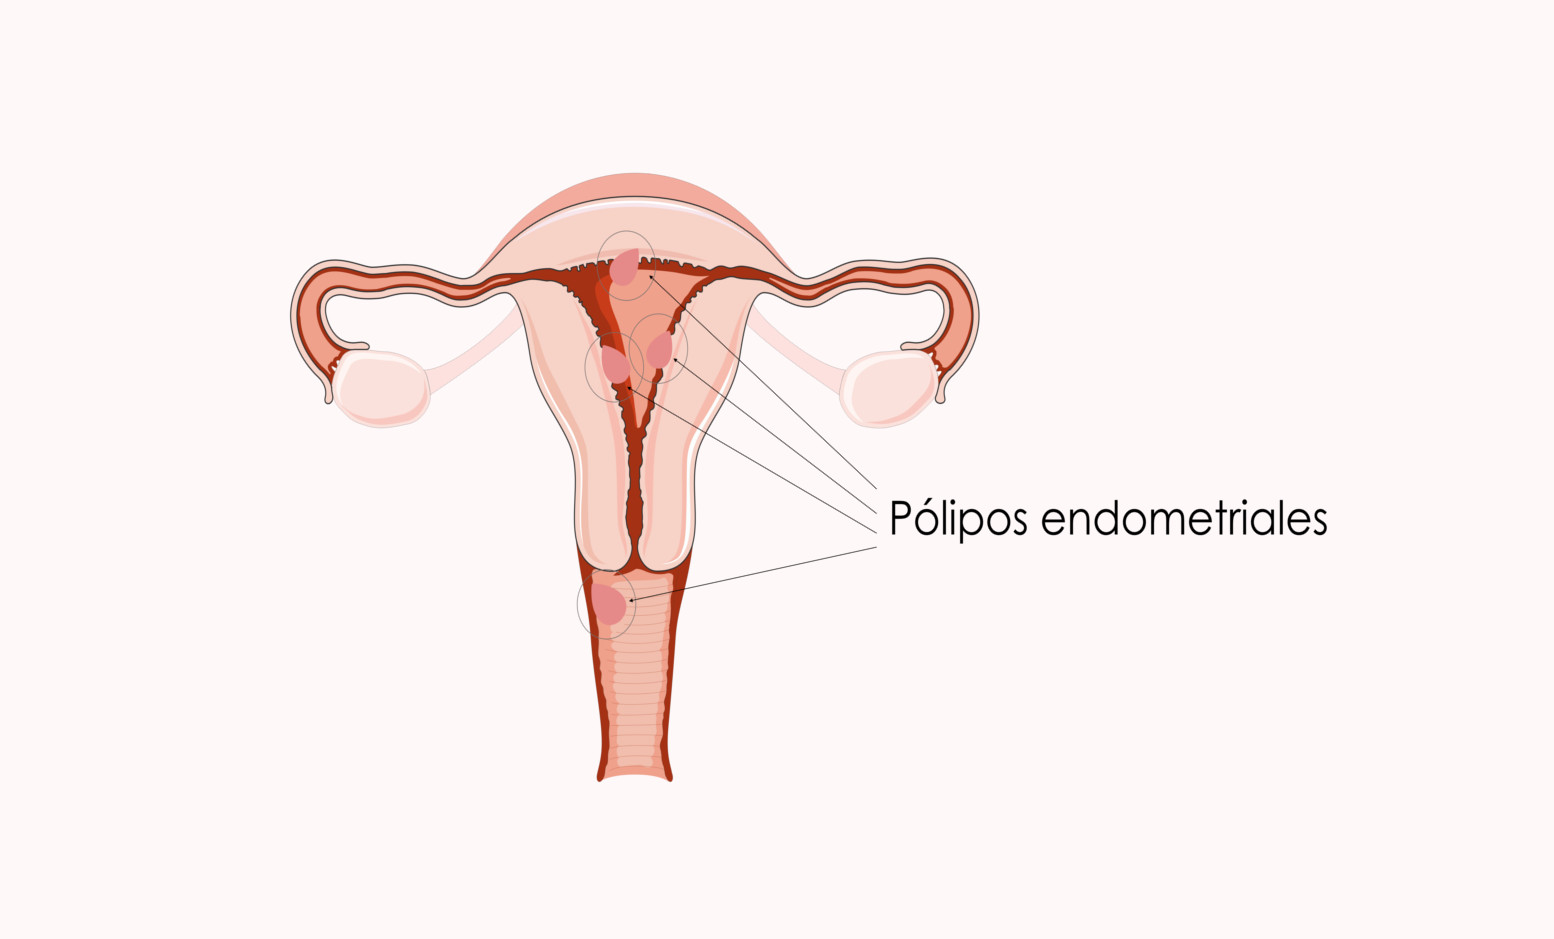 ¿Qué es un pólipo endometrial?